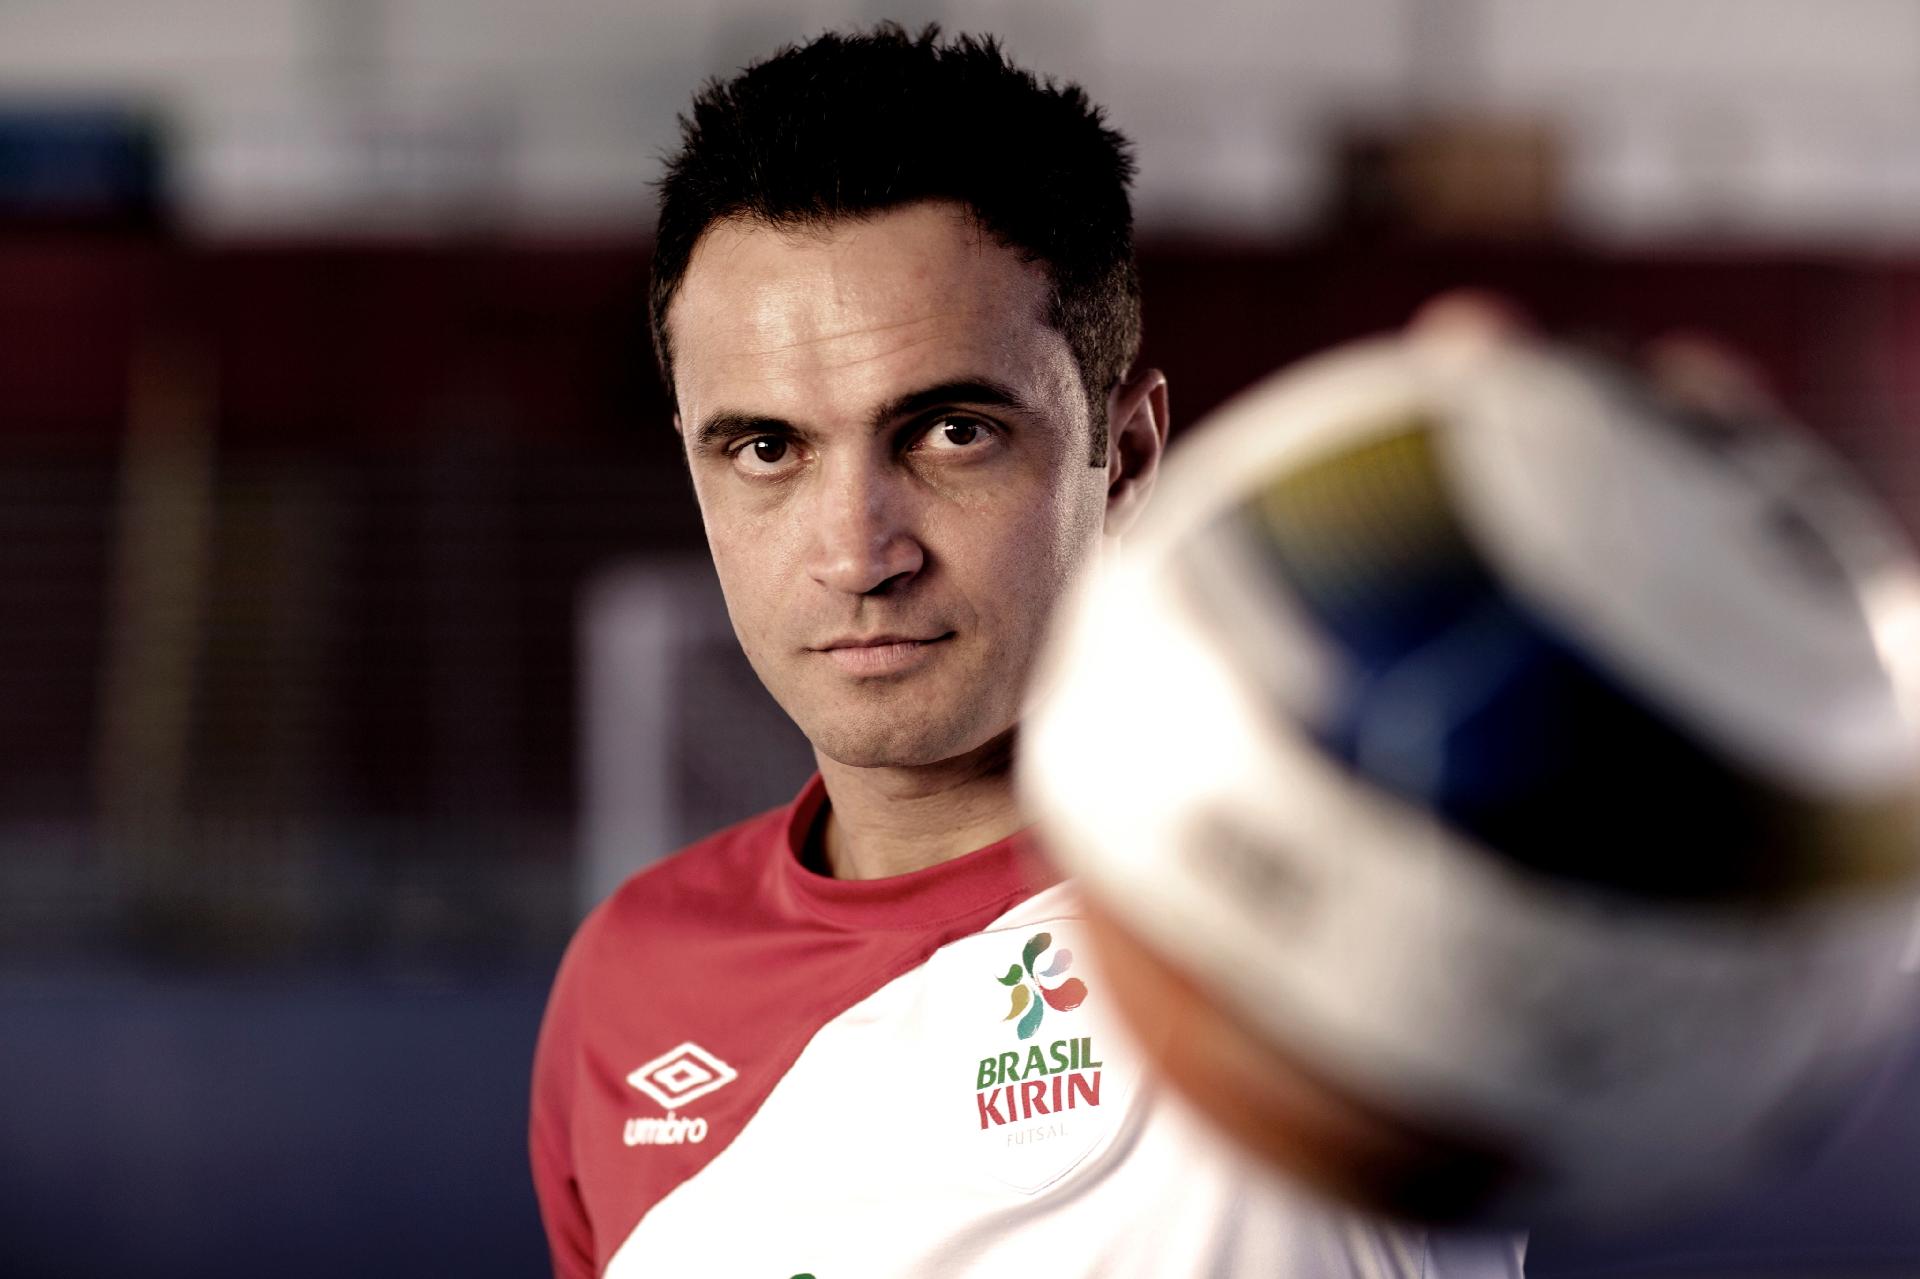 Manoel Tobias afirma que é o 'maior de todos os tempos' no futsal e coloca  Falcão em 2º